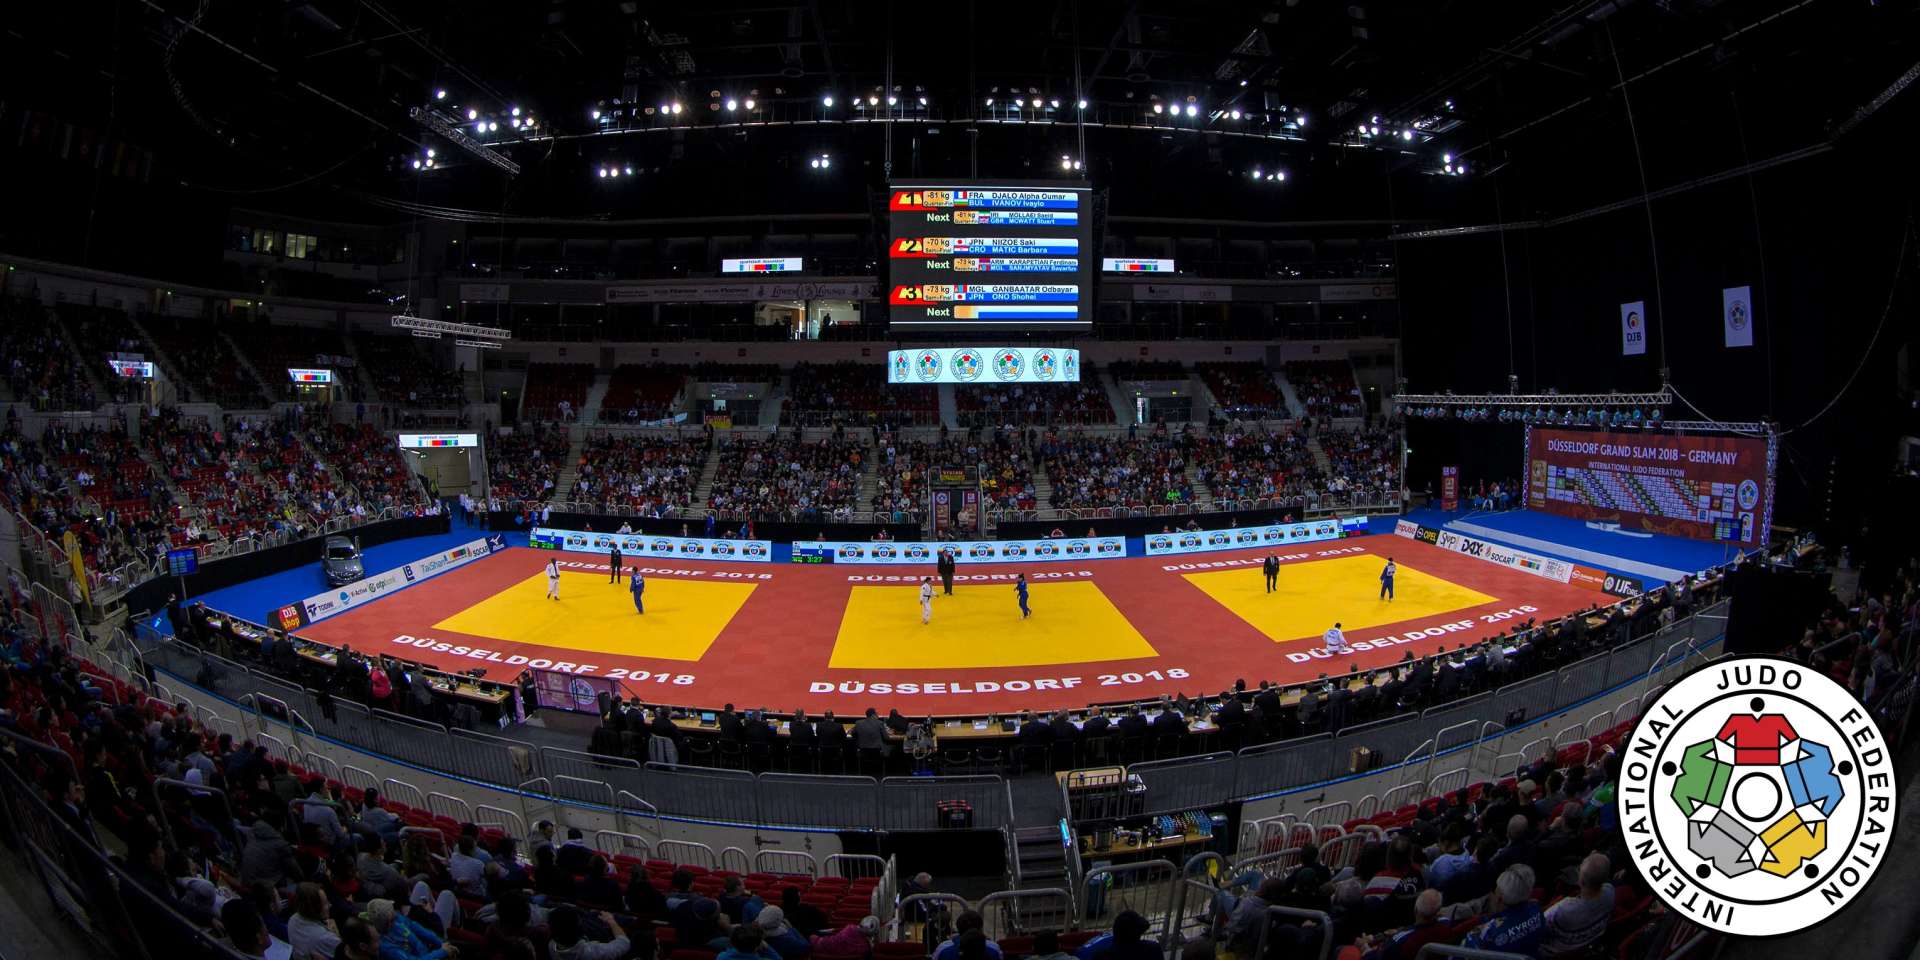 Două judoka clujence concurează la Grand Slam-ul de la Dusseldorf